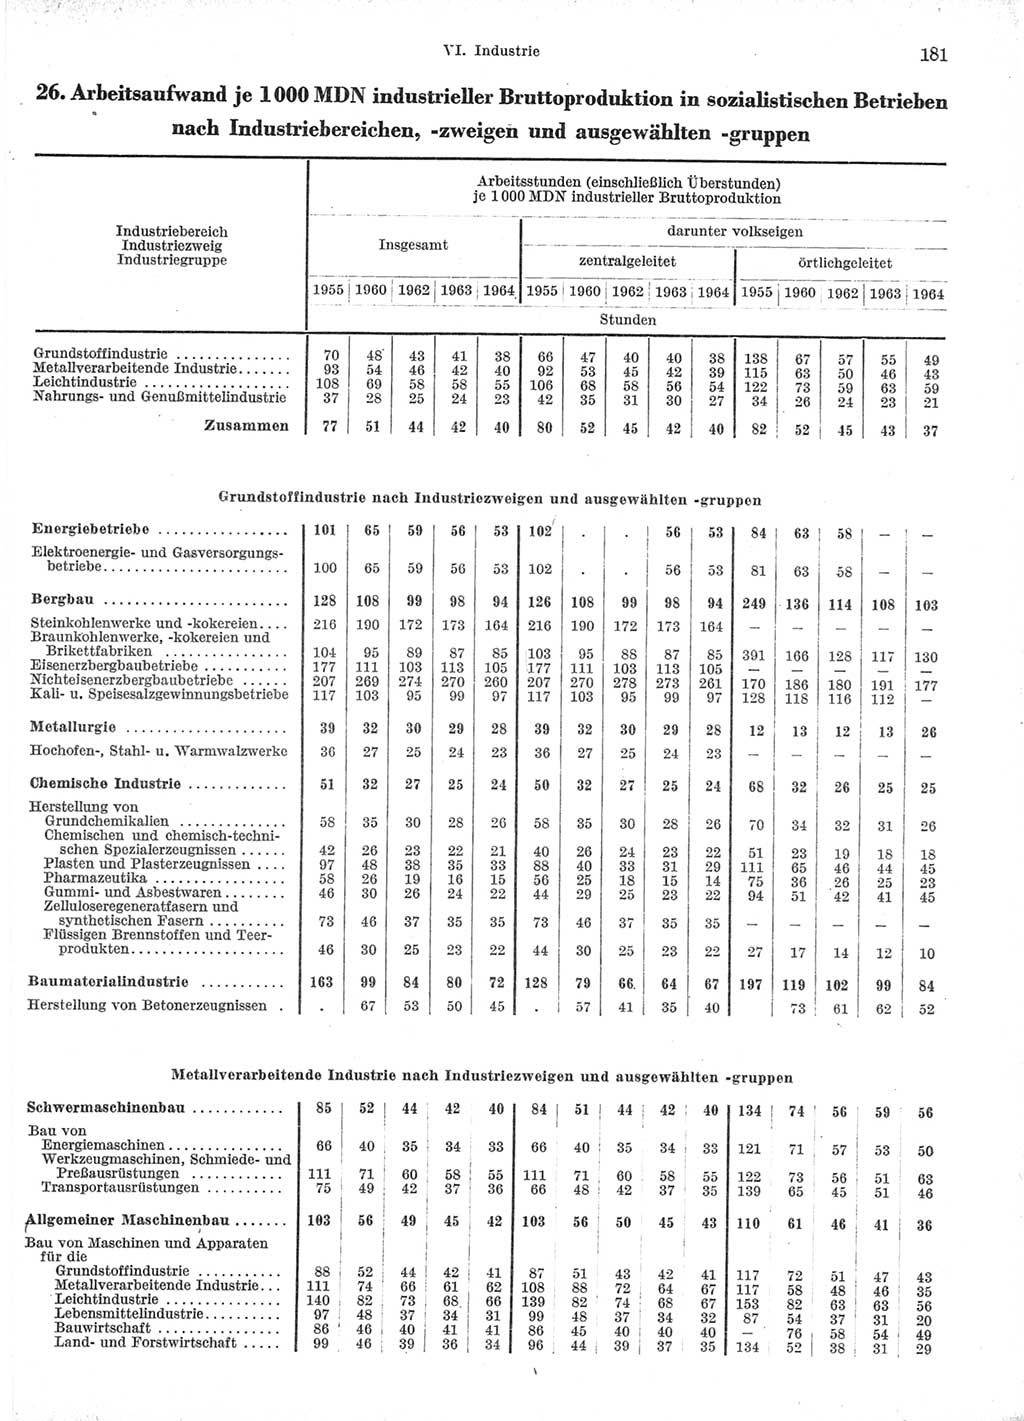 Statistisches Jahrbuch der Deutschen Demokratischen Republik (DDR) 1966, Seite 181 (Stat. Jb. DDR 1966, S. 181)